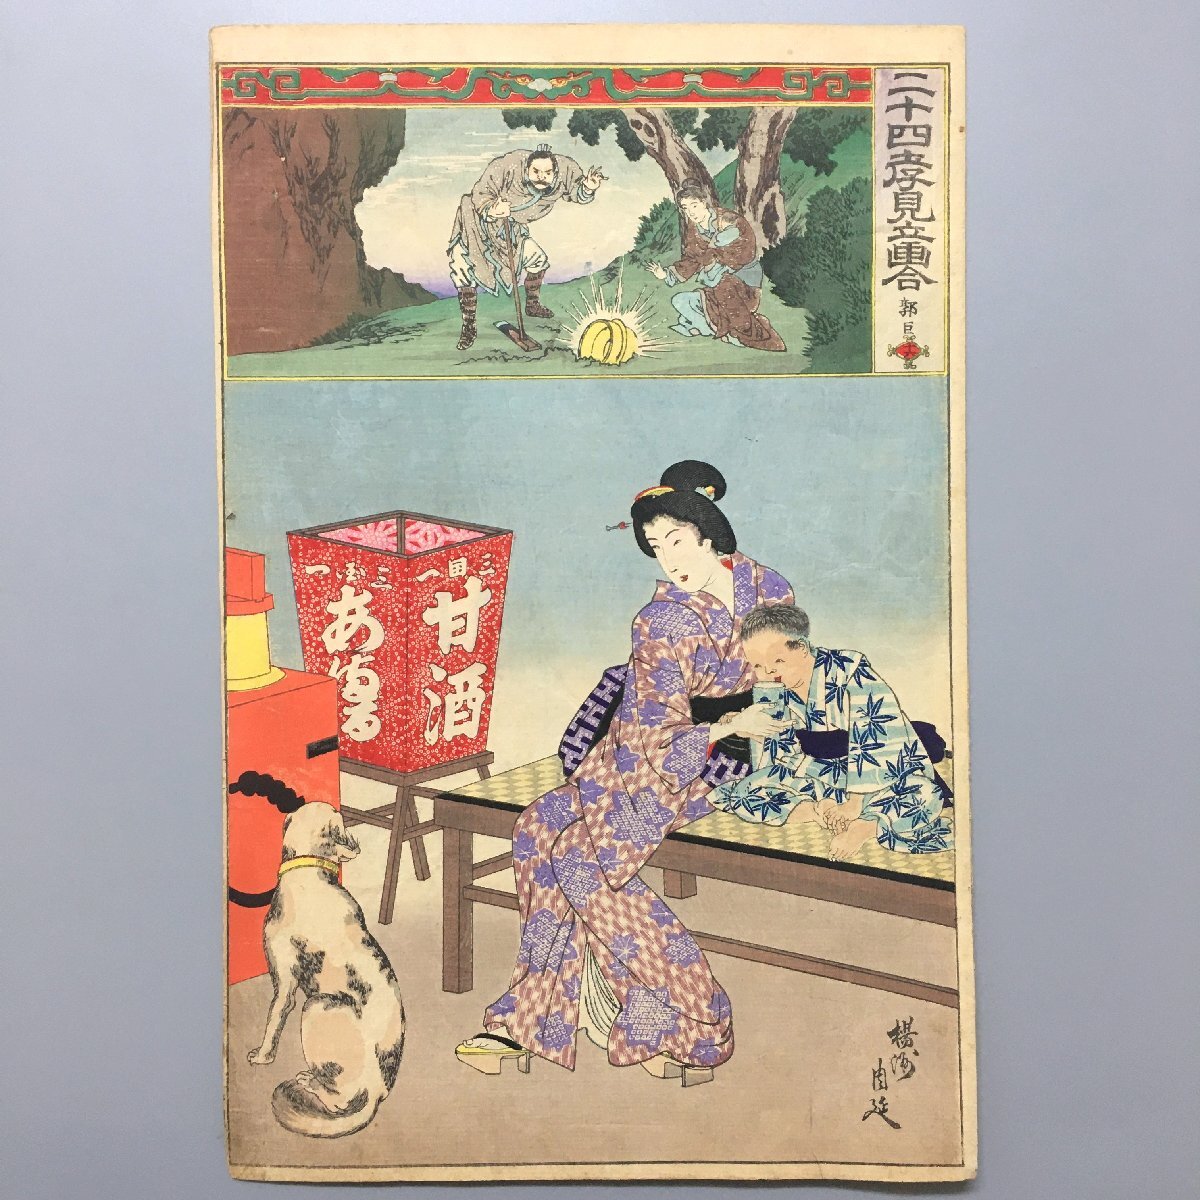 Vingt-quatre tableaux debout de Takami, XVIIIe Qianlu Yangshu Shunobu, Meiji23, Nishiki-e, ukiyo-e grand format, impression sur bois, chien, peinture, Ukiyo-e, imprimer, Peinture de belle femme